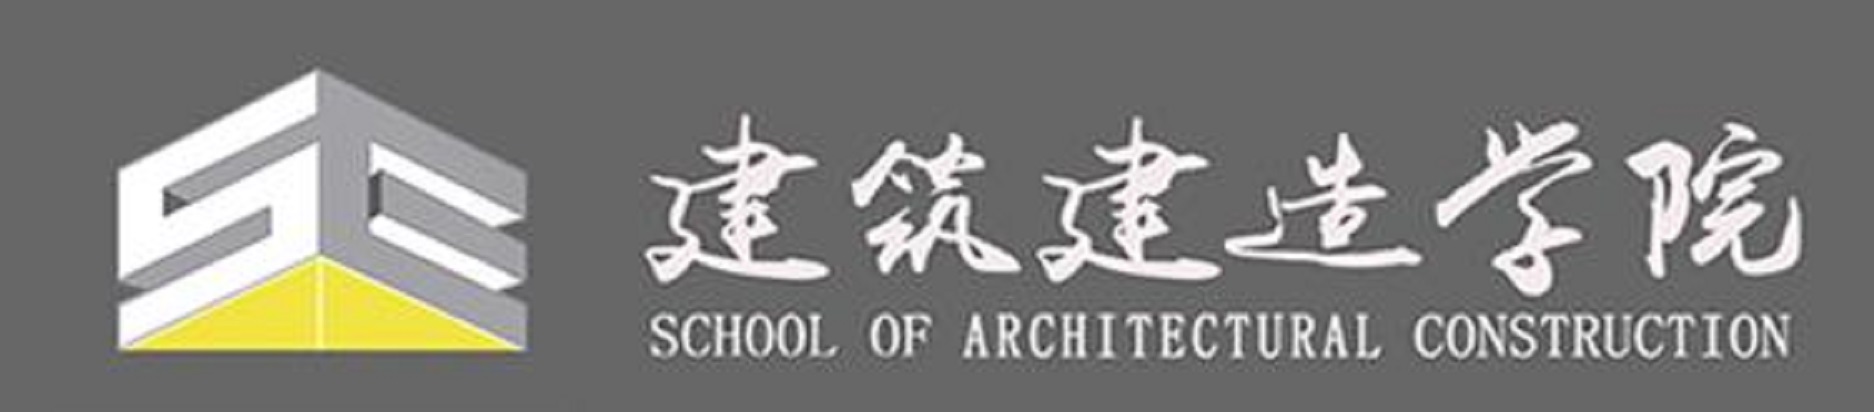 江蘇建築職業技術學院建築建造學院